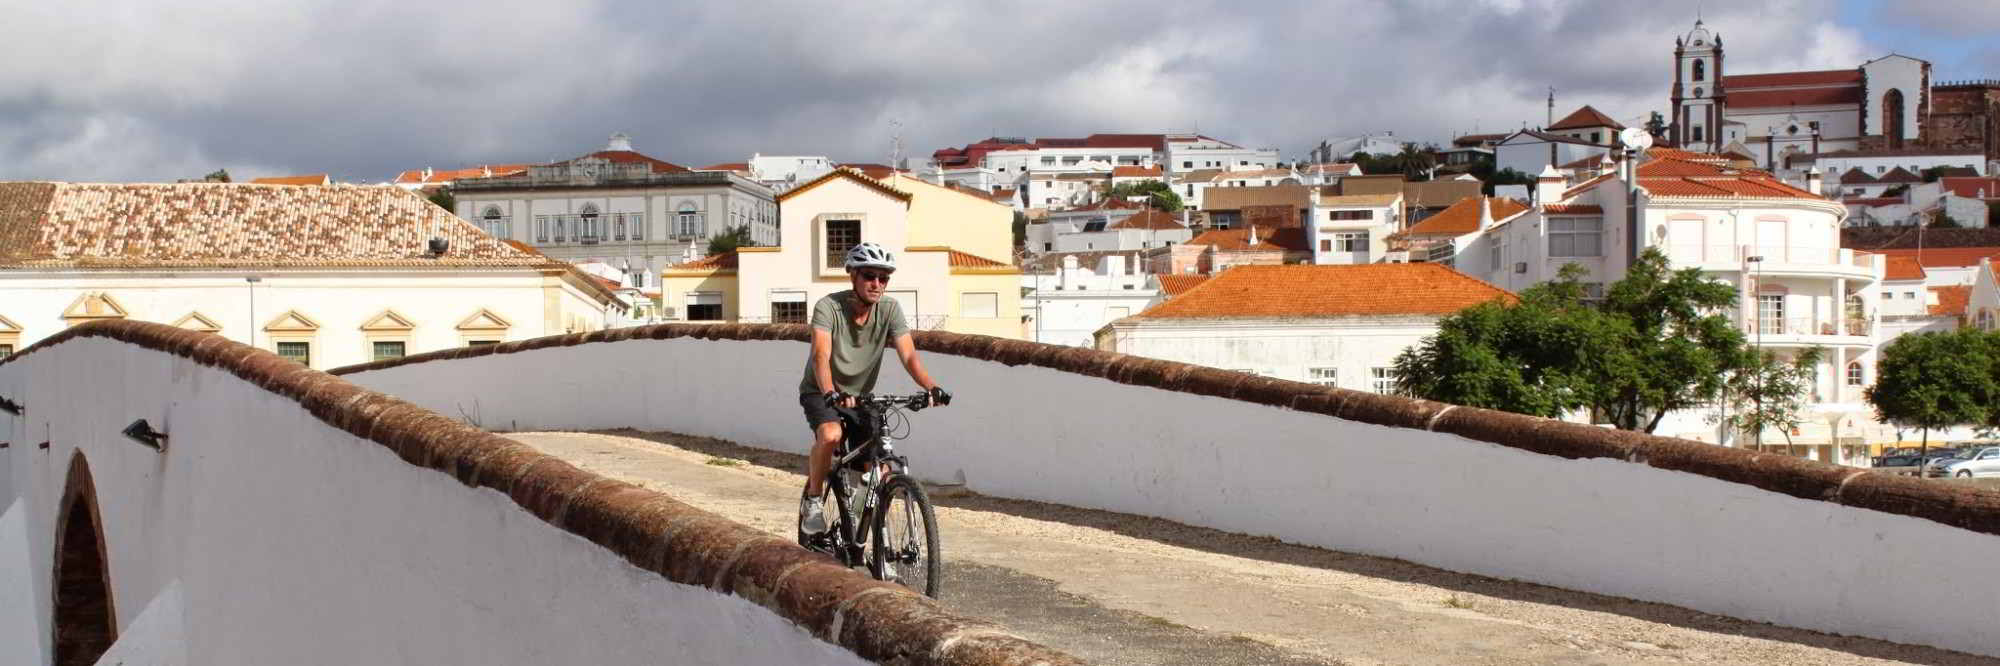 De Via Algarviana slingert door het binnenland van de Algarve, ver weg van het massatoerisme.